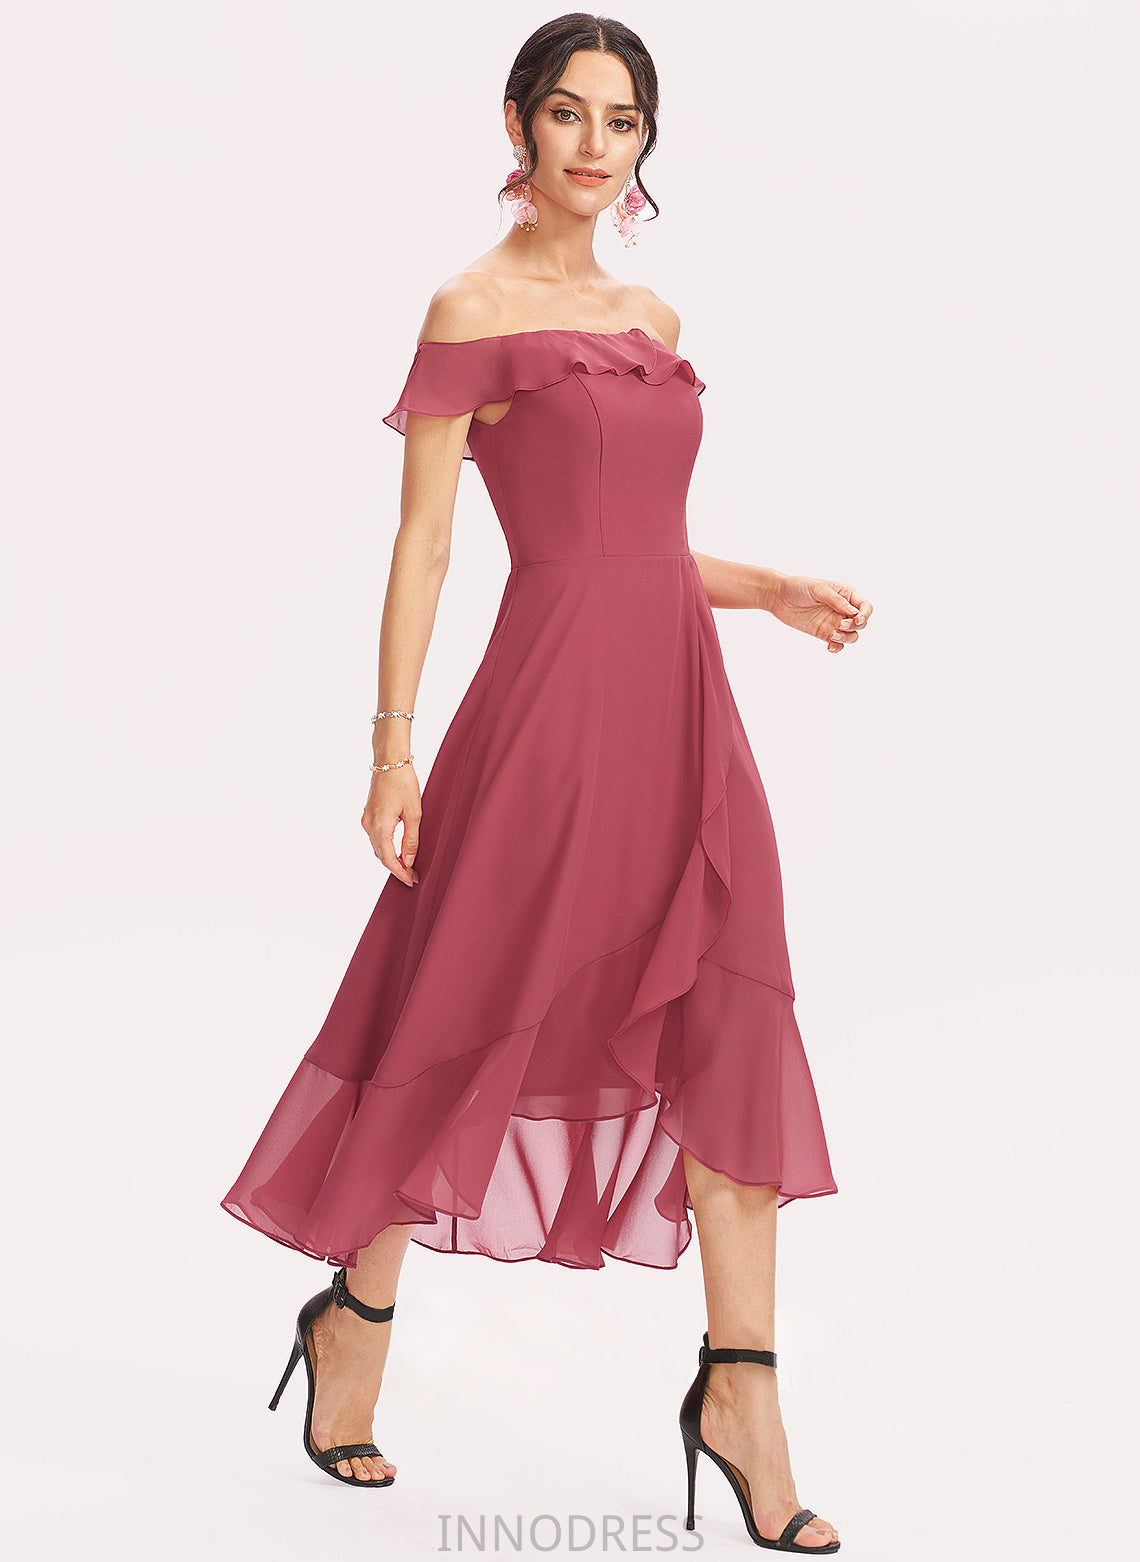 Fabric Embellishment CascadingRuffles Tea-Length Silhouette Length Neckline Off-the-Shoulder A-Line Alyson Floor Length A-Line/Princess